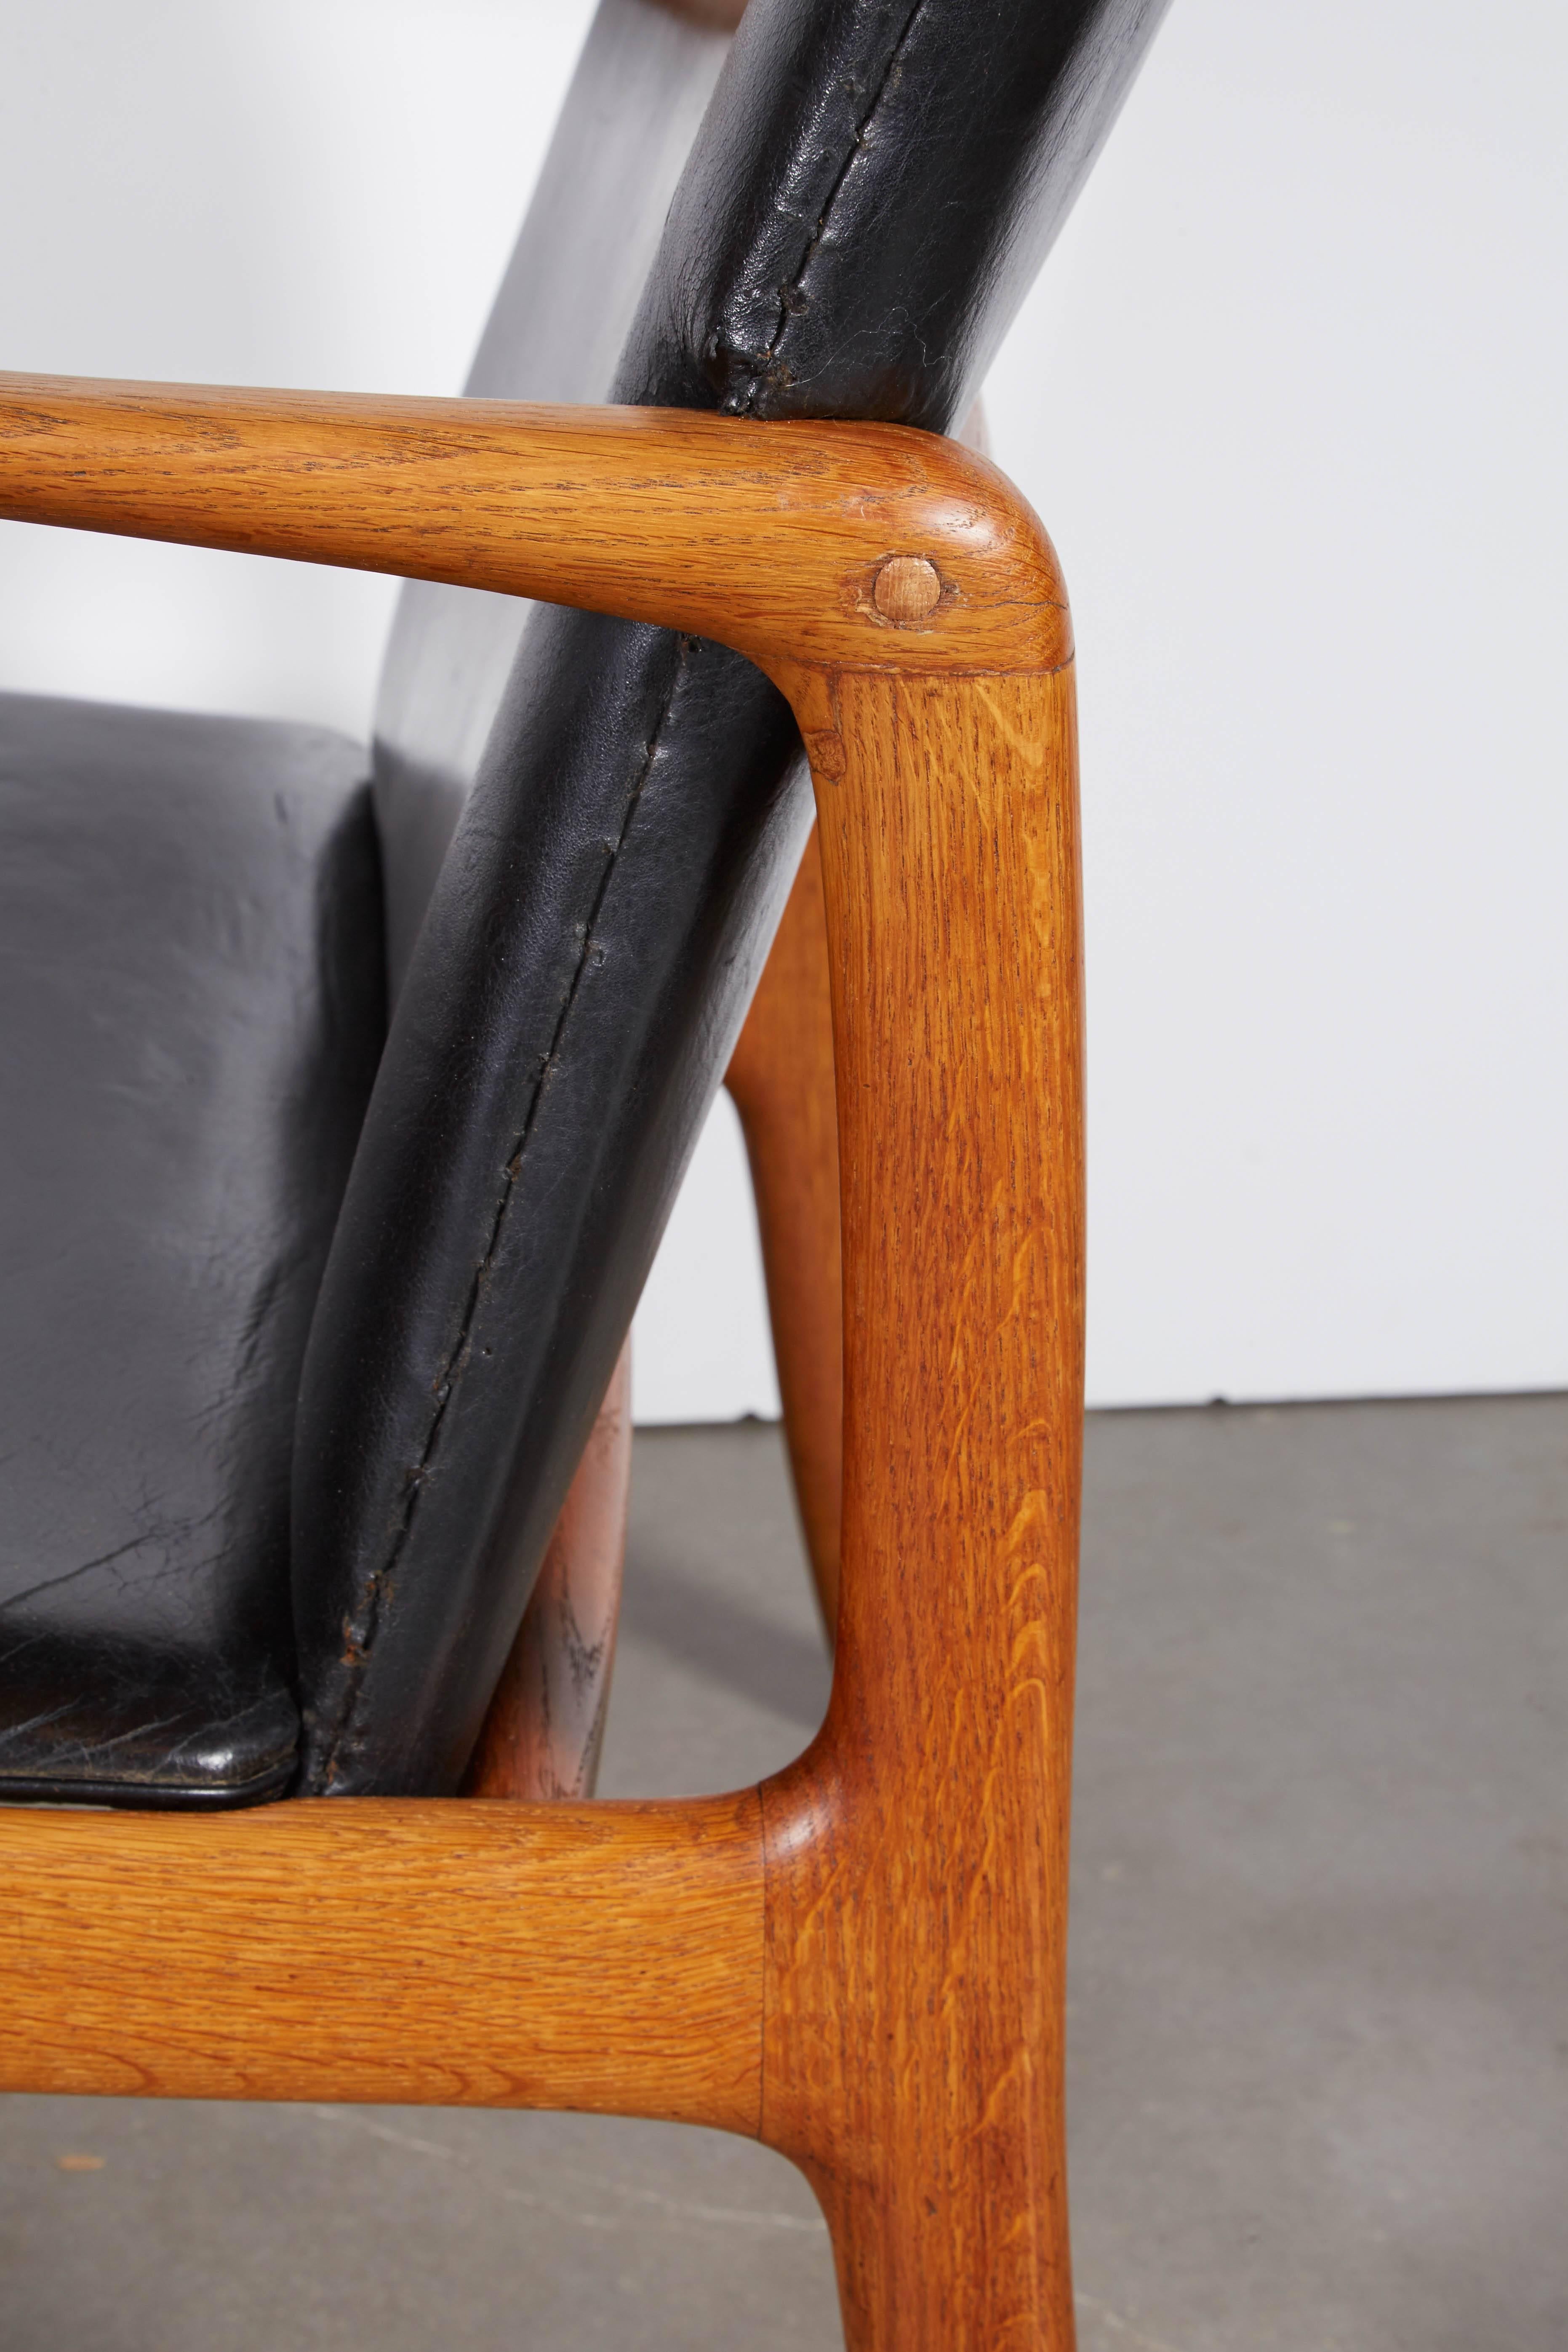 Oiled Ole Wanscher Beak Chair